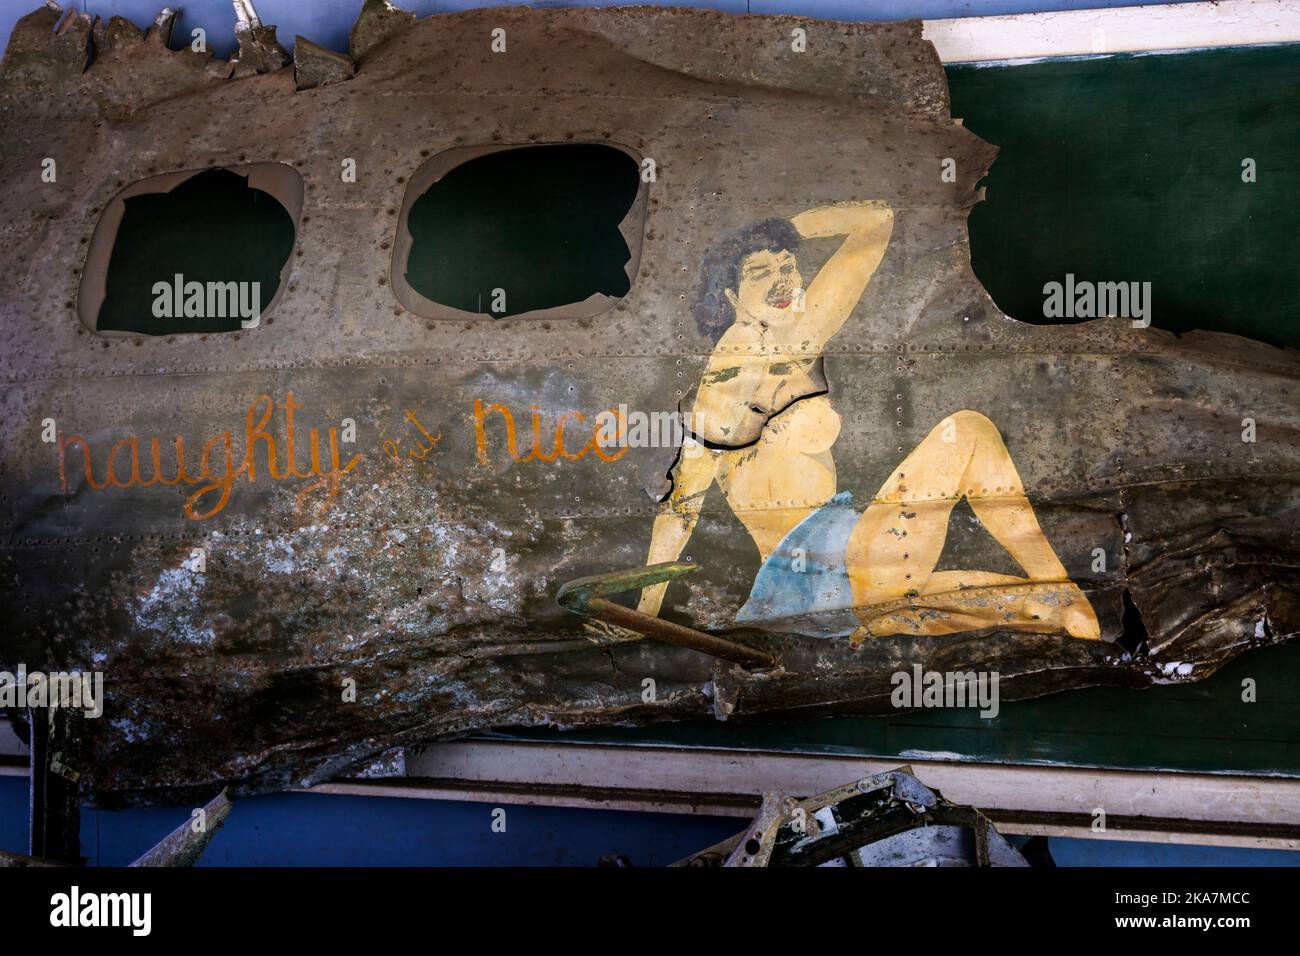 Panneau de l'épave de B17 bombardiers montrant l'art du nez Naughty mais Nice avec dame peinte. Kokopo War Museum, Kokopo Papouasie-Nouvelle-Guinée Banque D'Images